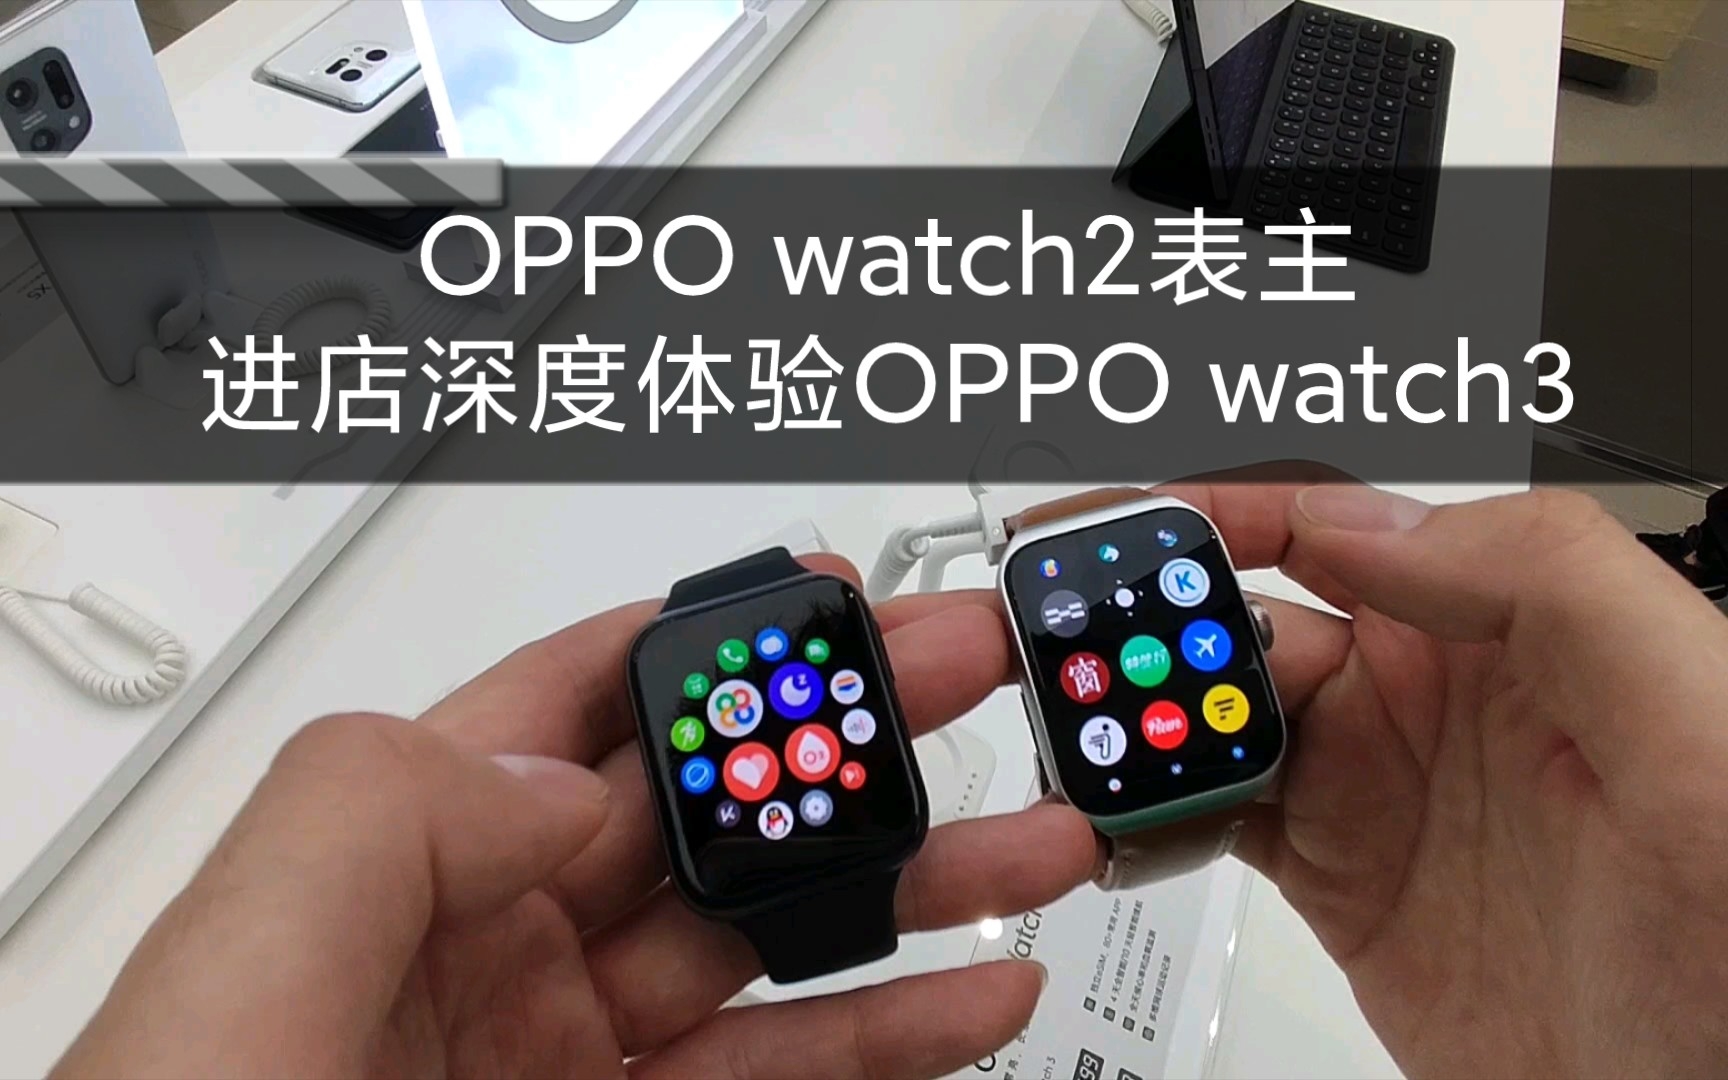 OPPO watch2表主带你进店深度体验新款OPPO watch3、OPPO watch3 Pro